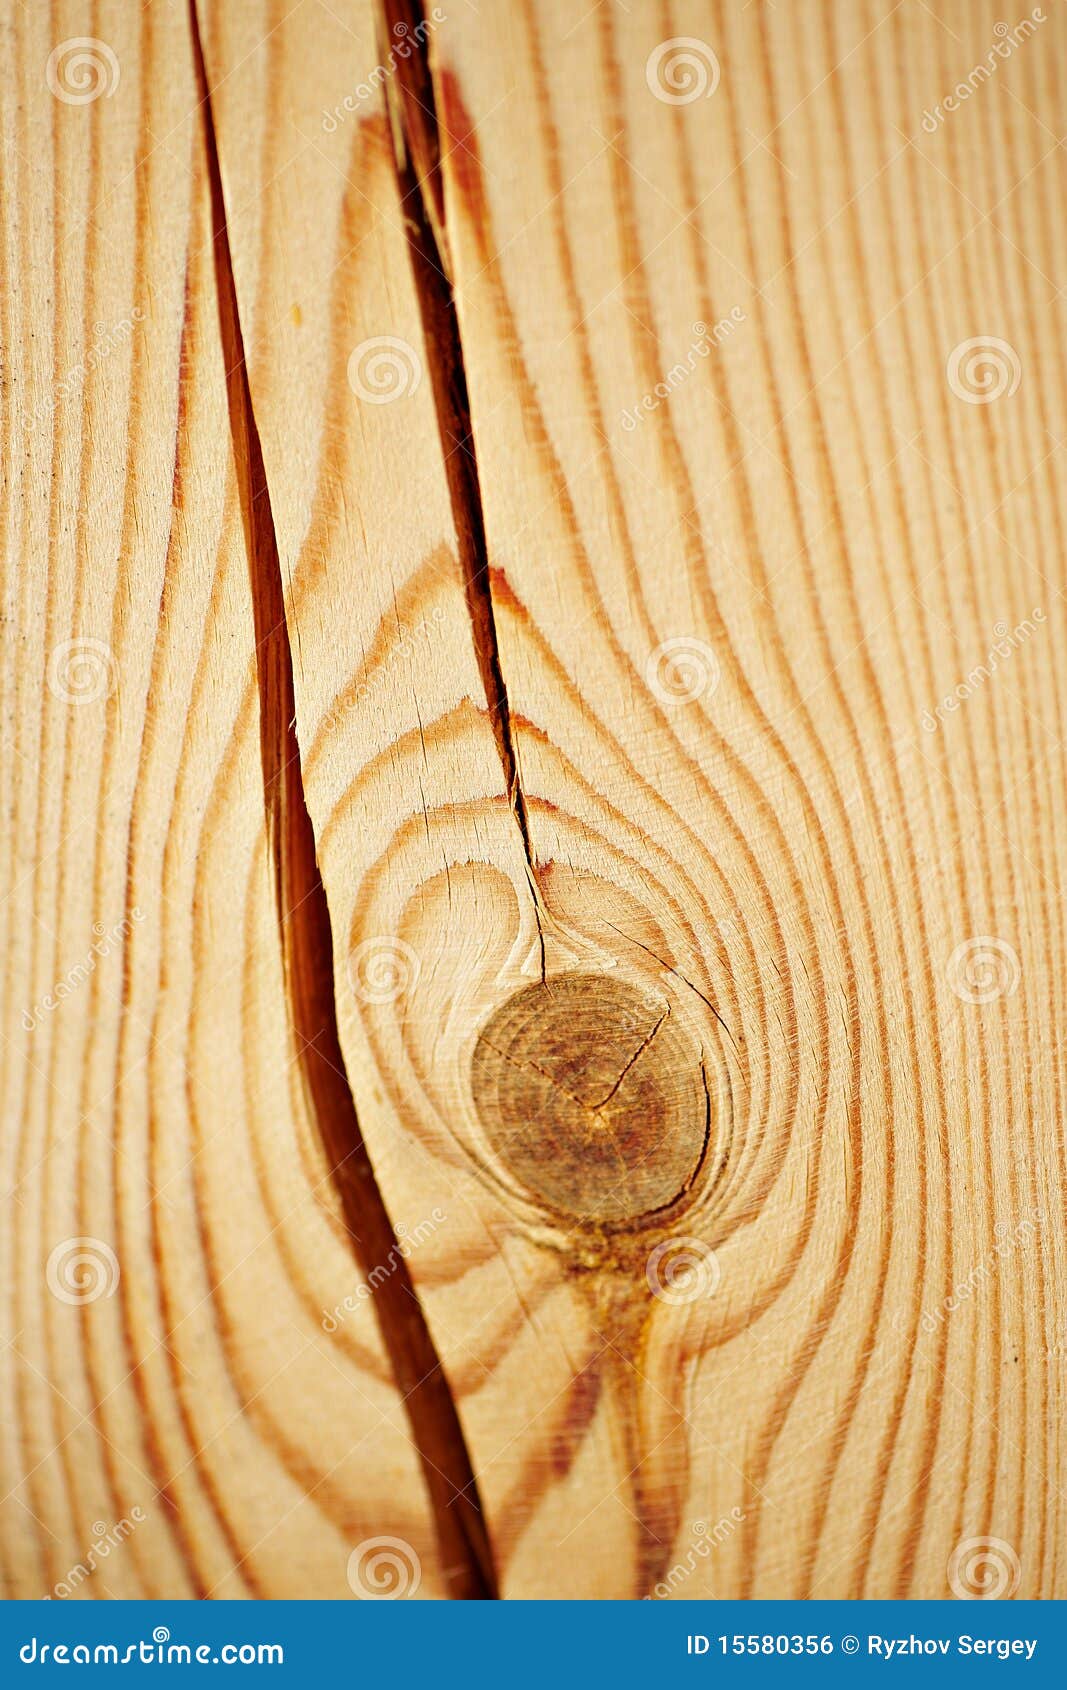 Трещина в доске. Трещины древесины. Трещины в пиломатериале. Пороки древесины трещины.